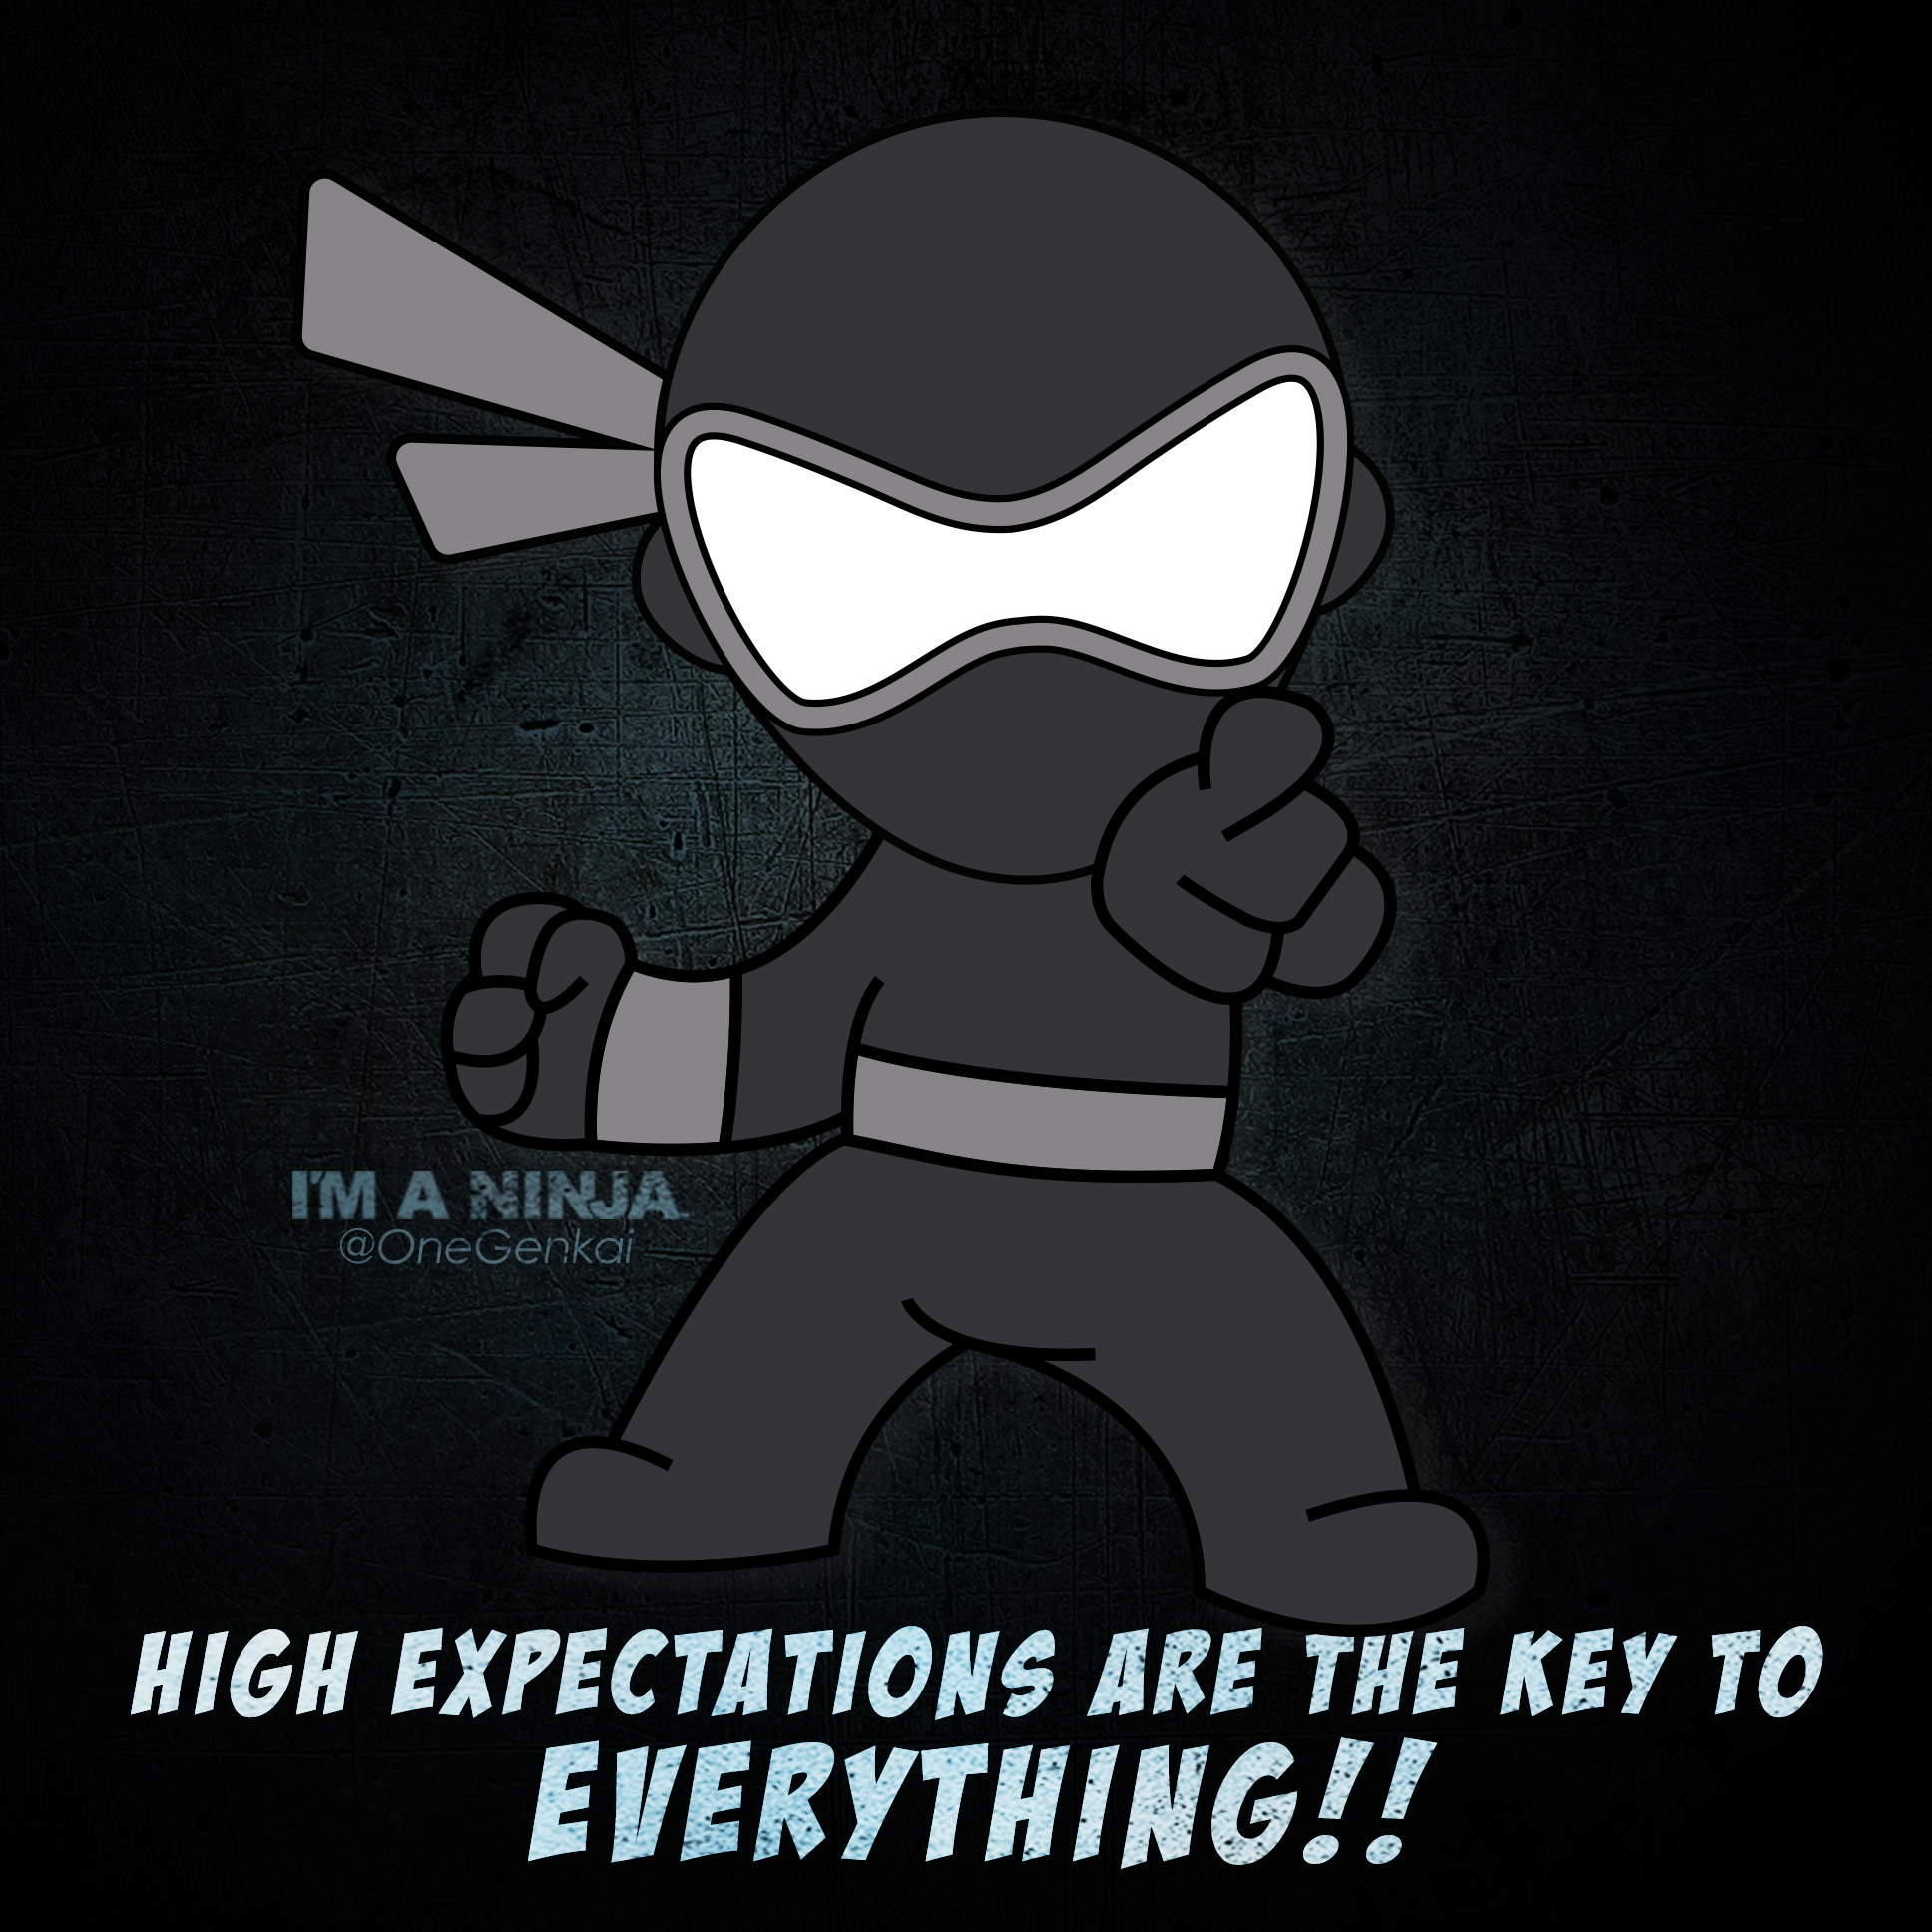 I'M A NINJA Ninja Quote - Expectations